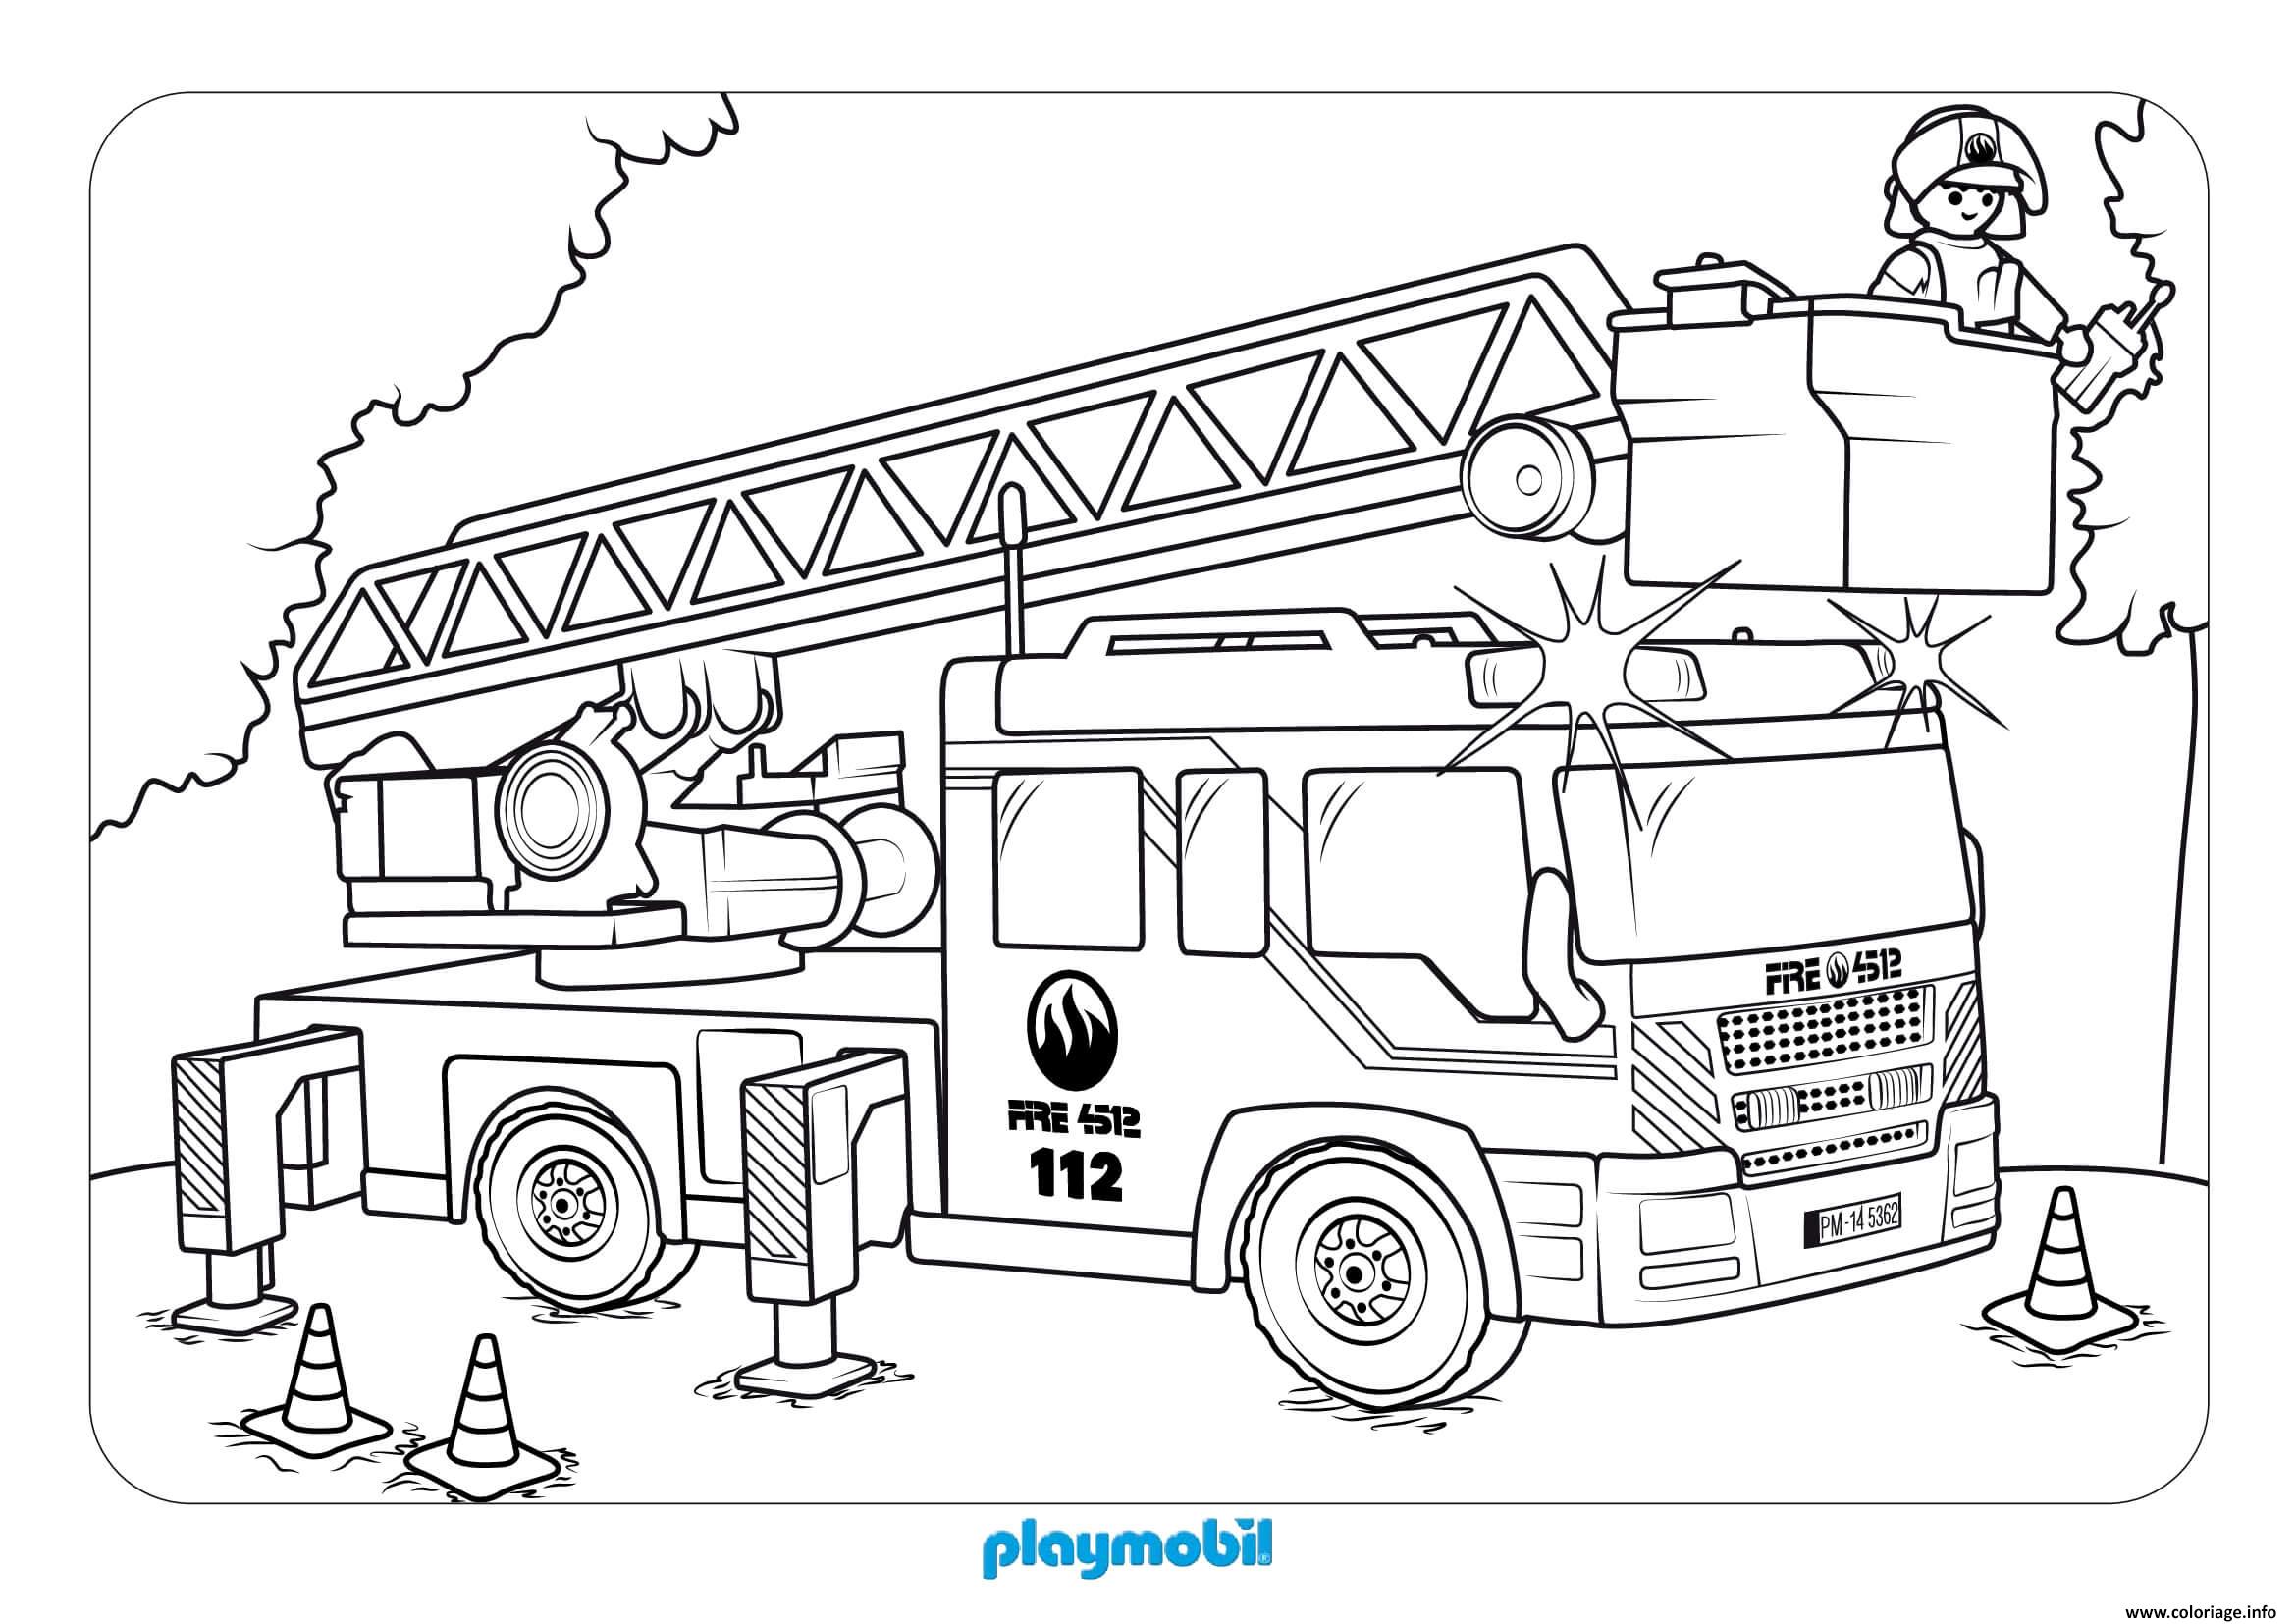 Dessin playmobil camion de pompier Coloriage Gratuit à Imprimer